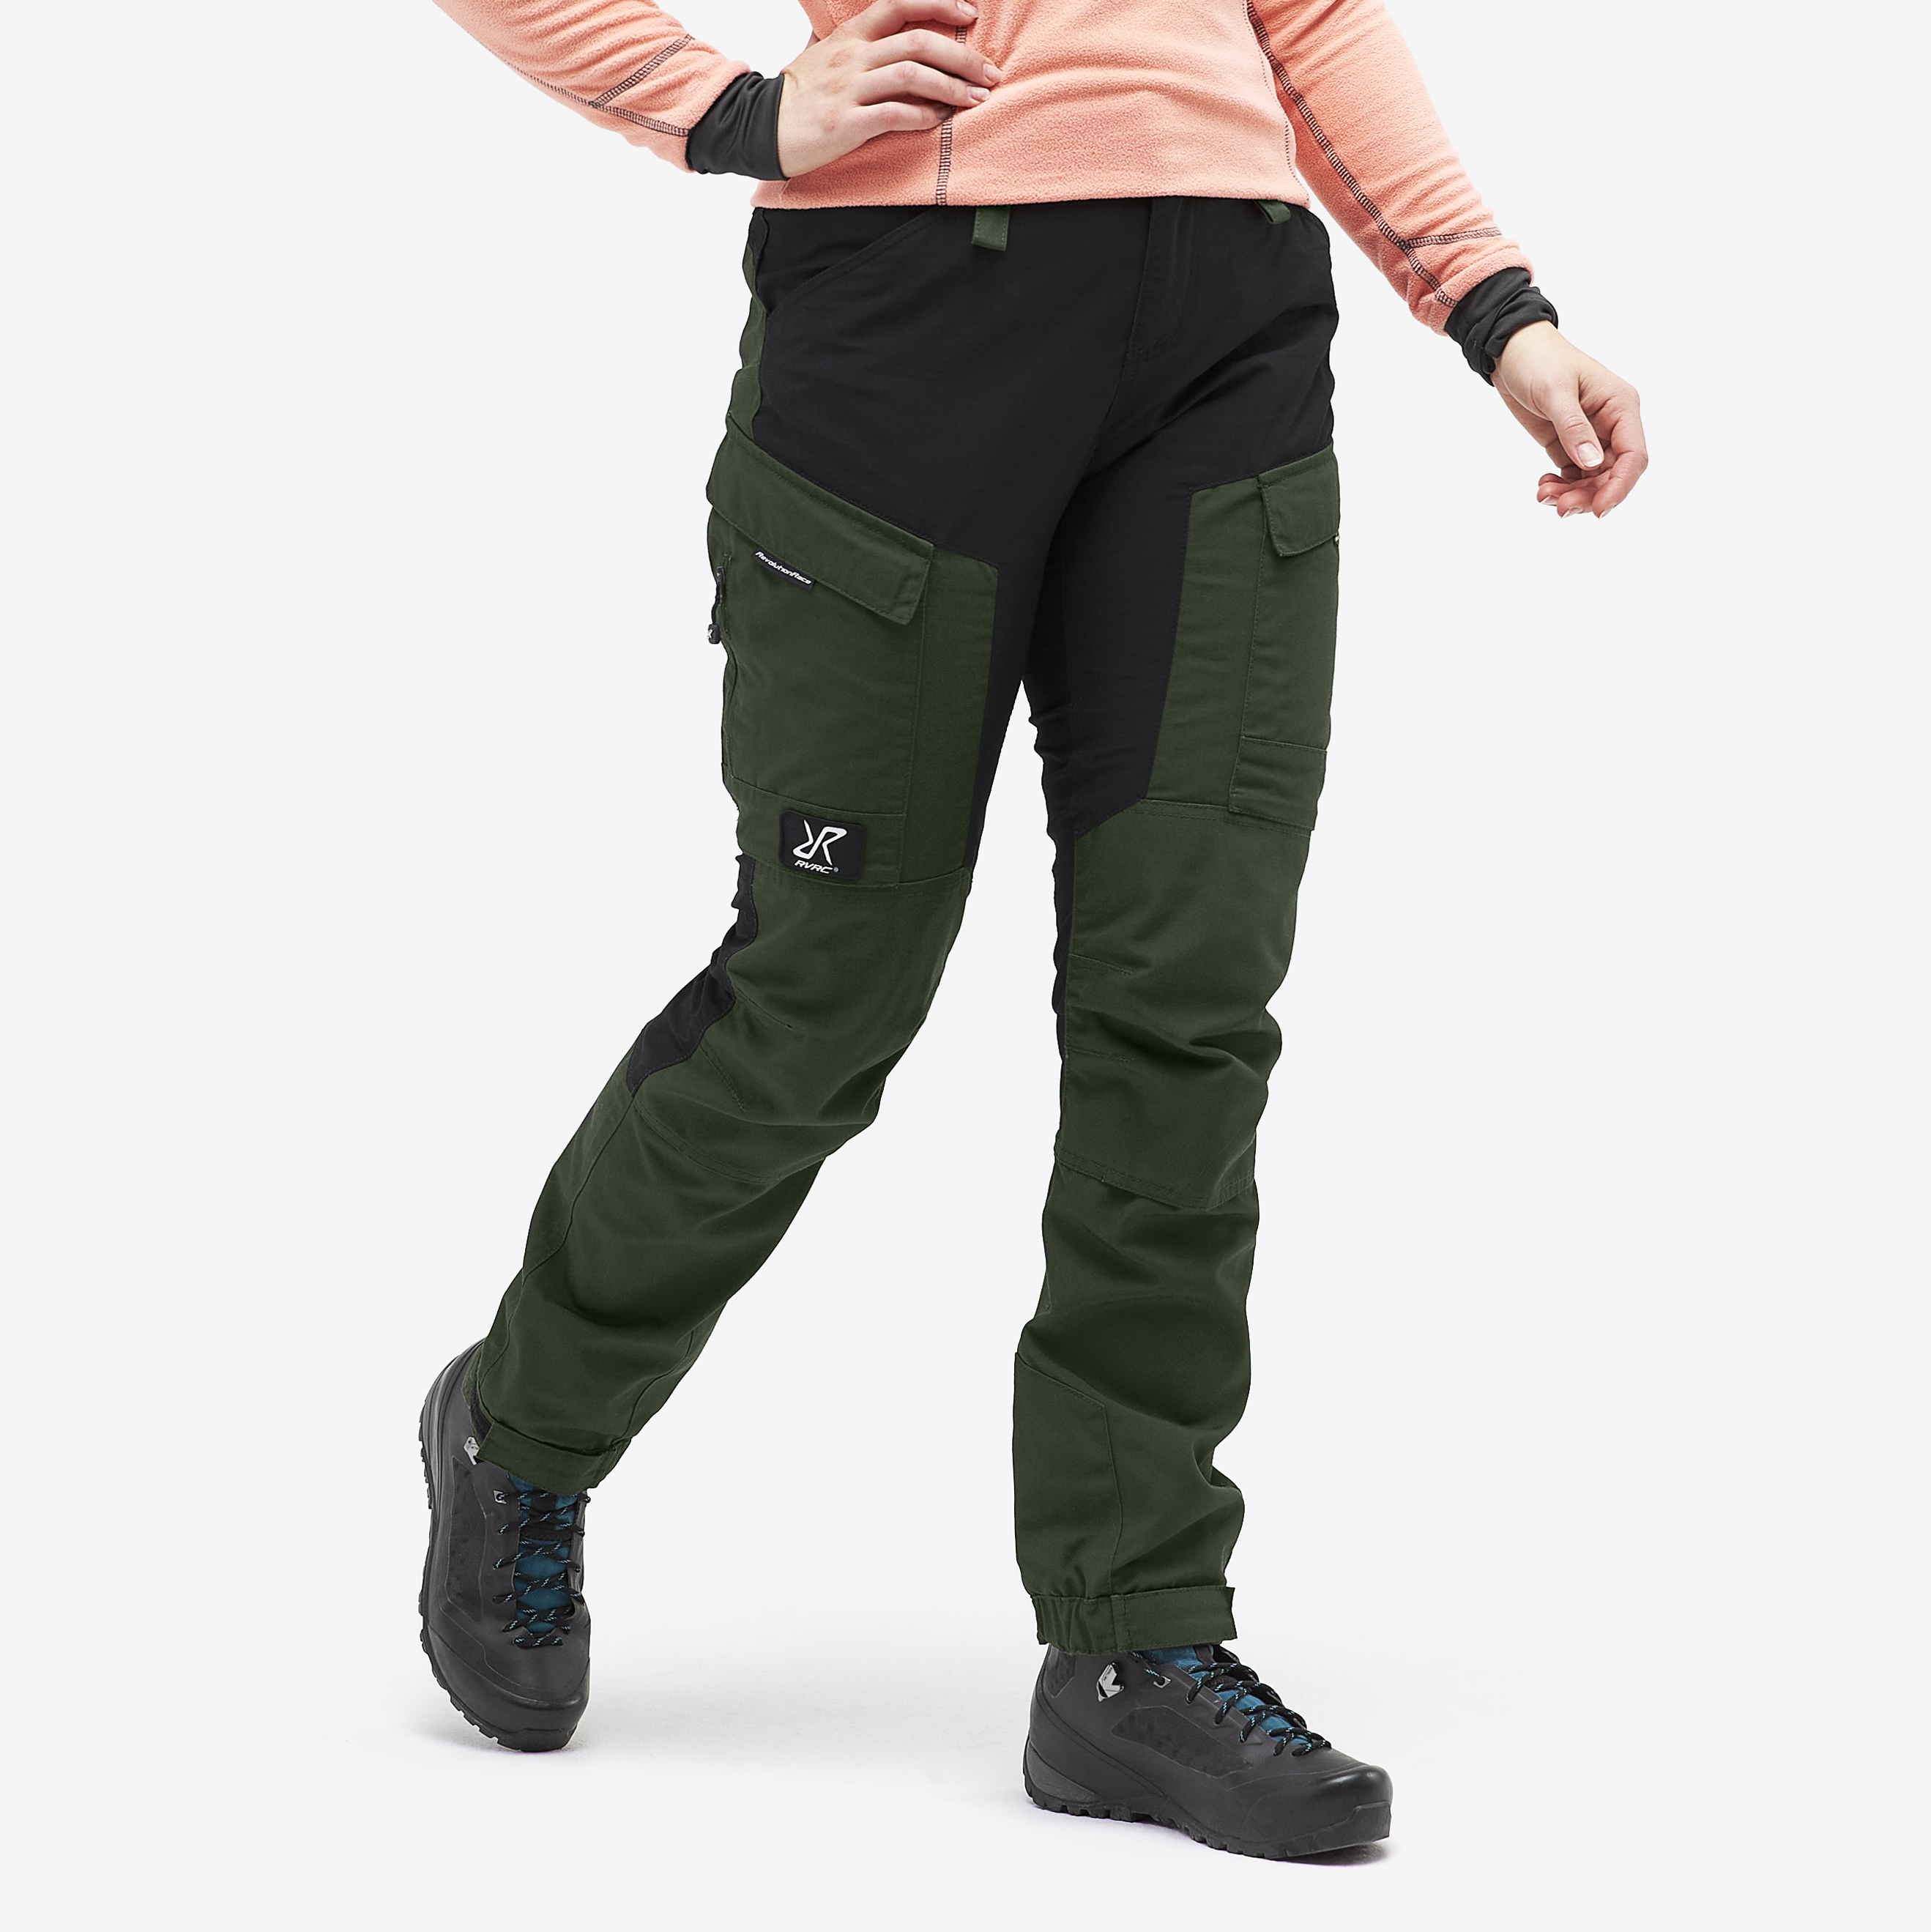 RVRC GP Short outdoor pants for women in green